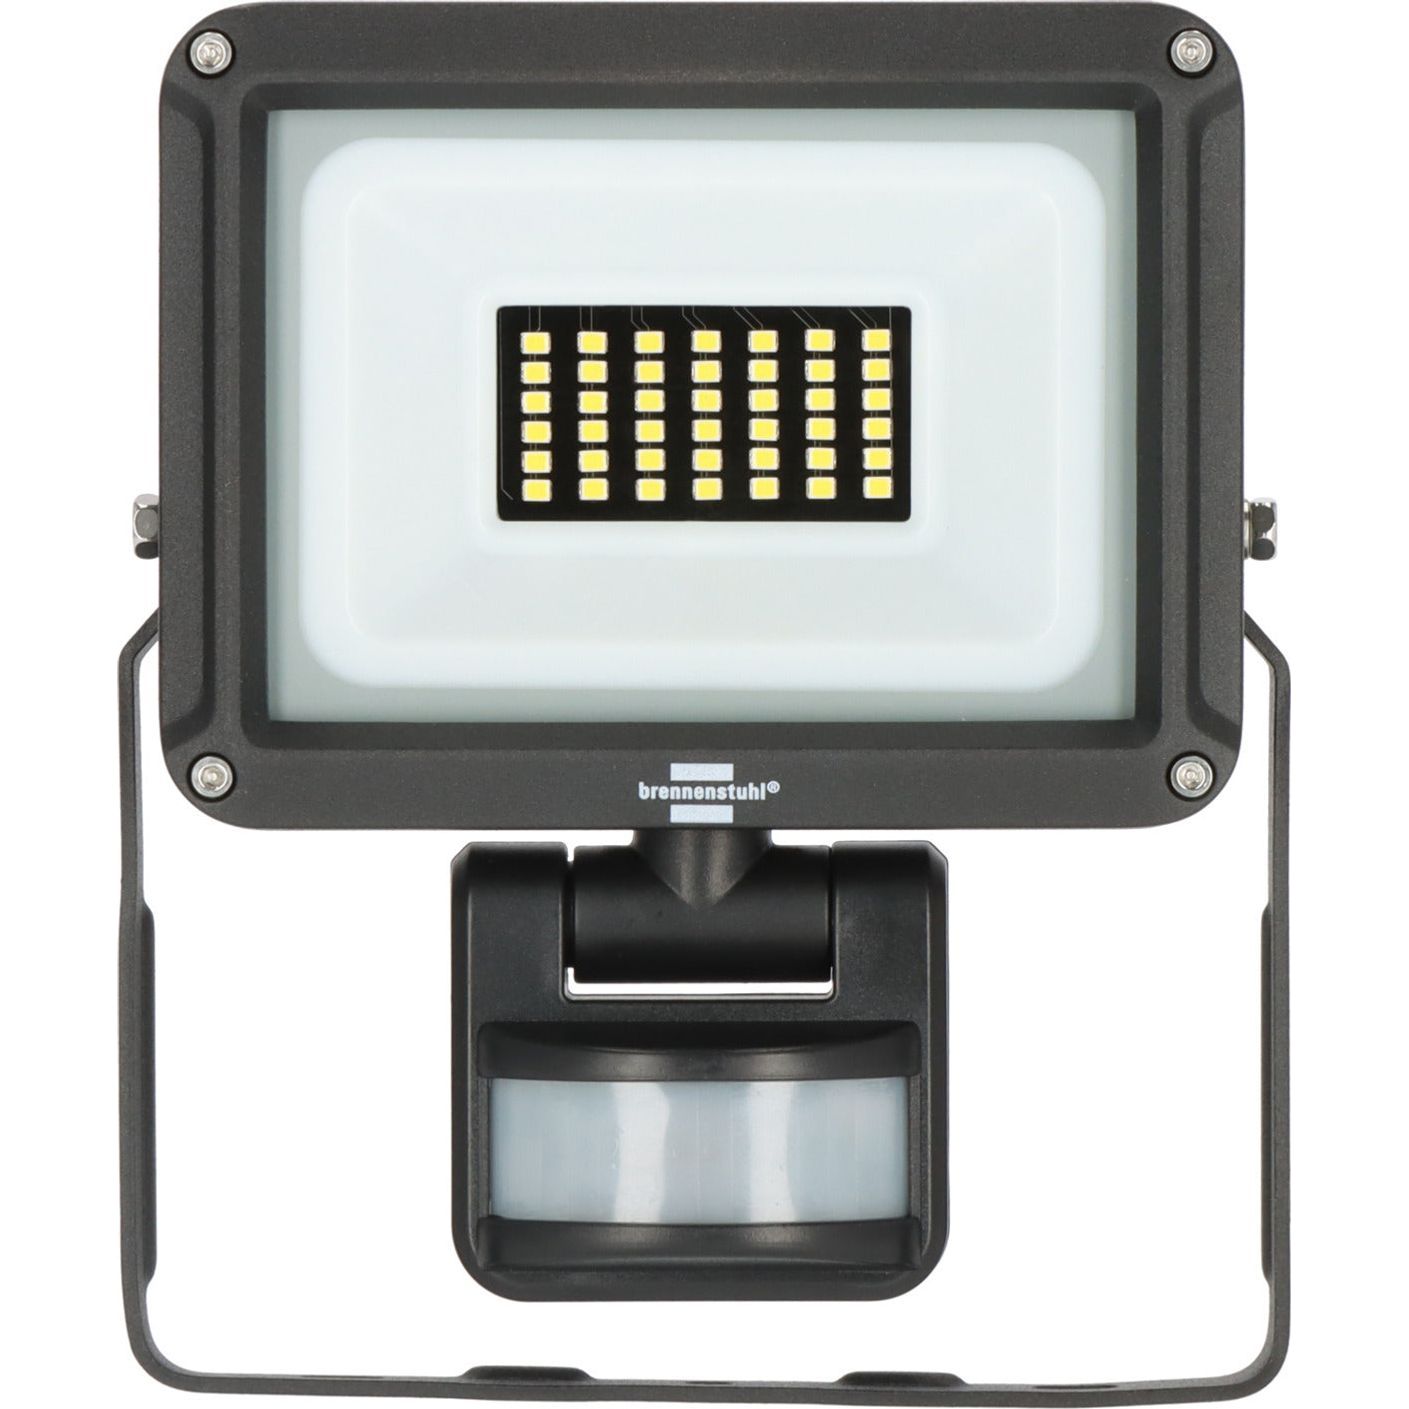 Brennenstuhl LED Strahler JARO 3060 P mit Infrarot-Bewegungsmelder, 2300lm, 20W, IP65